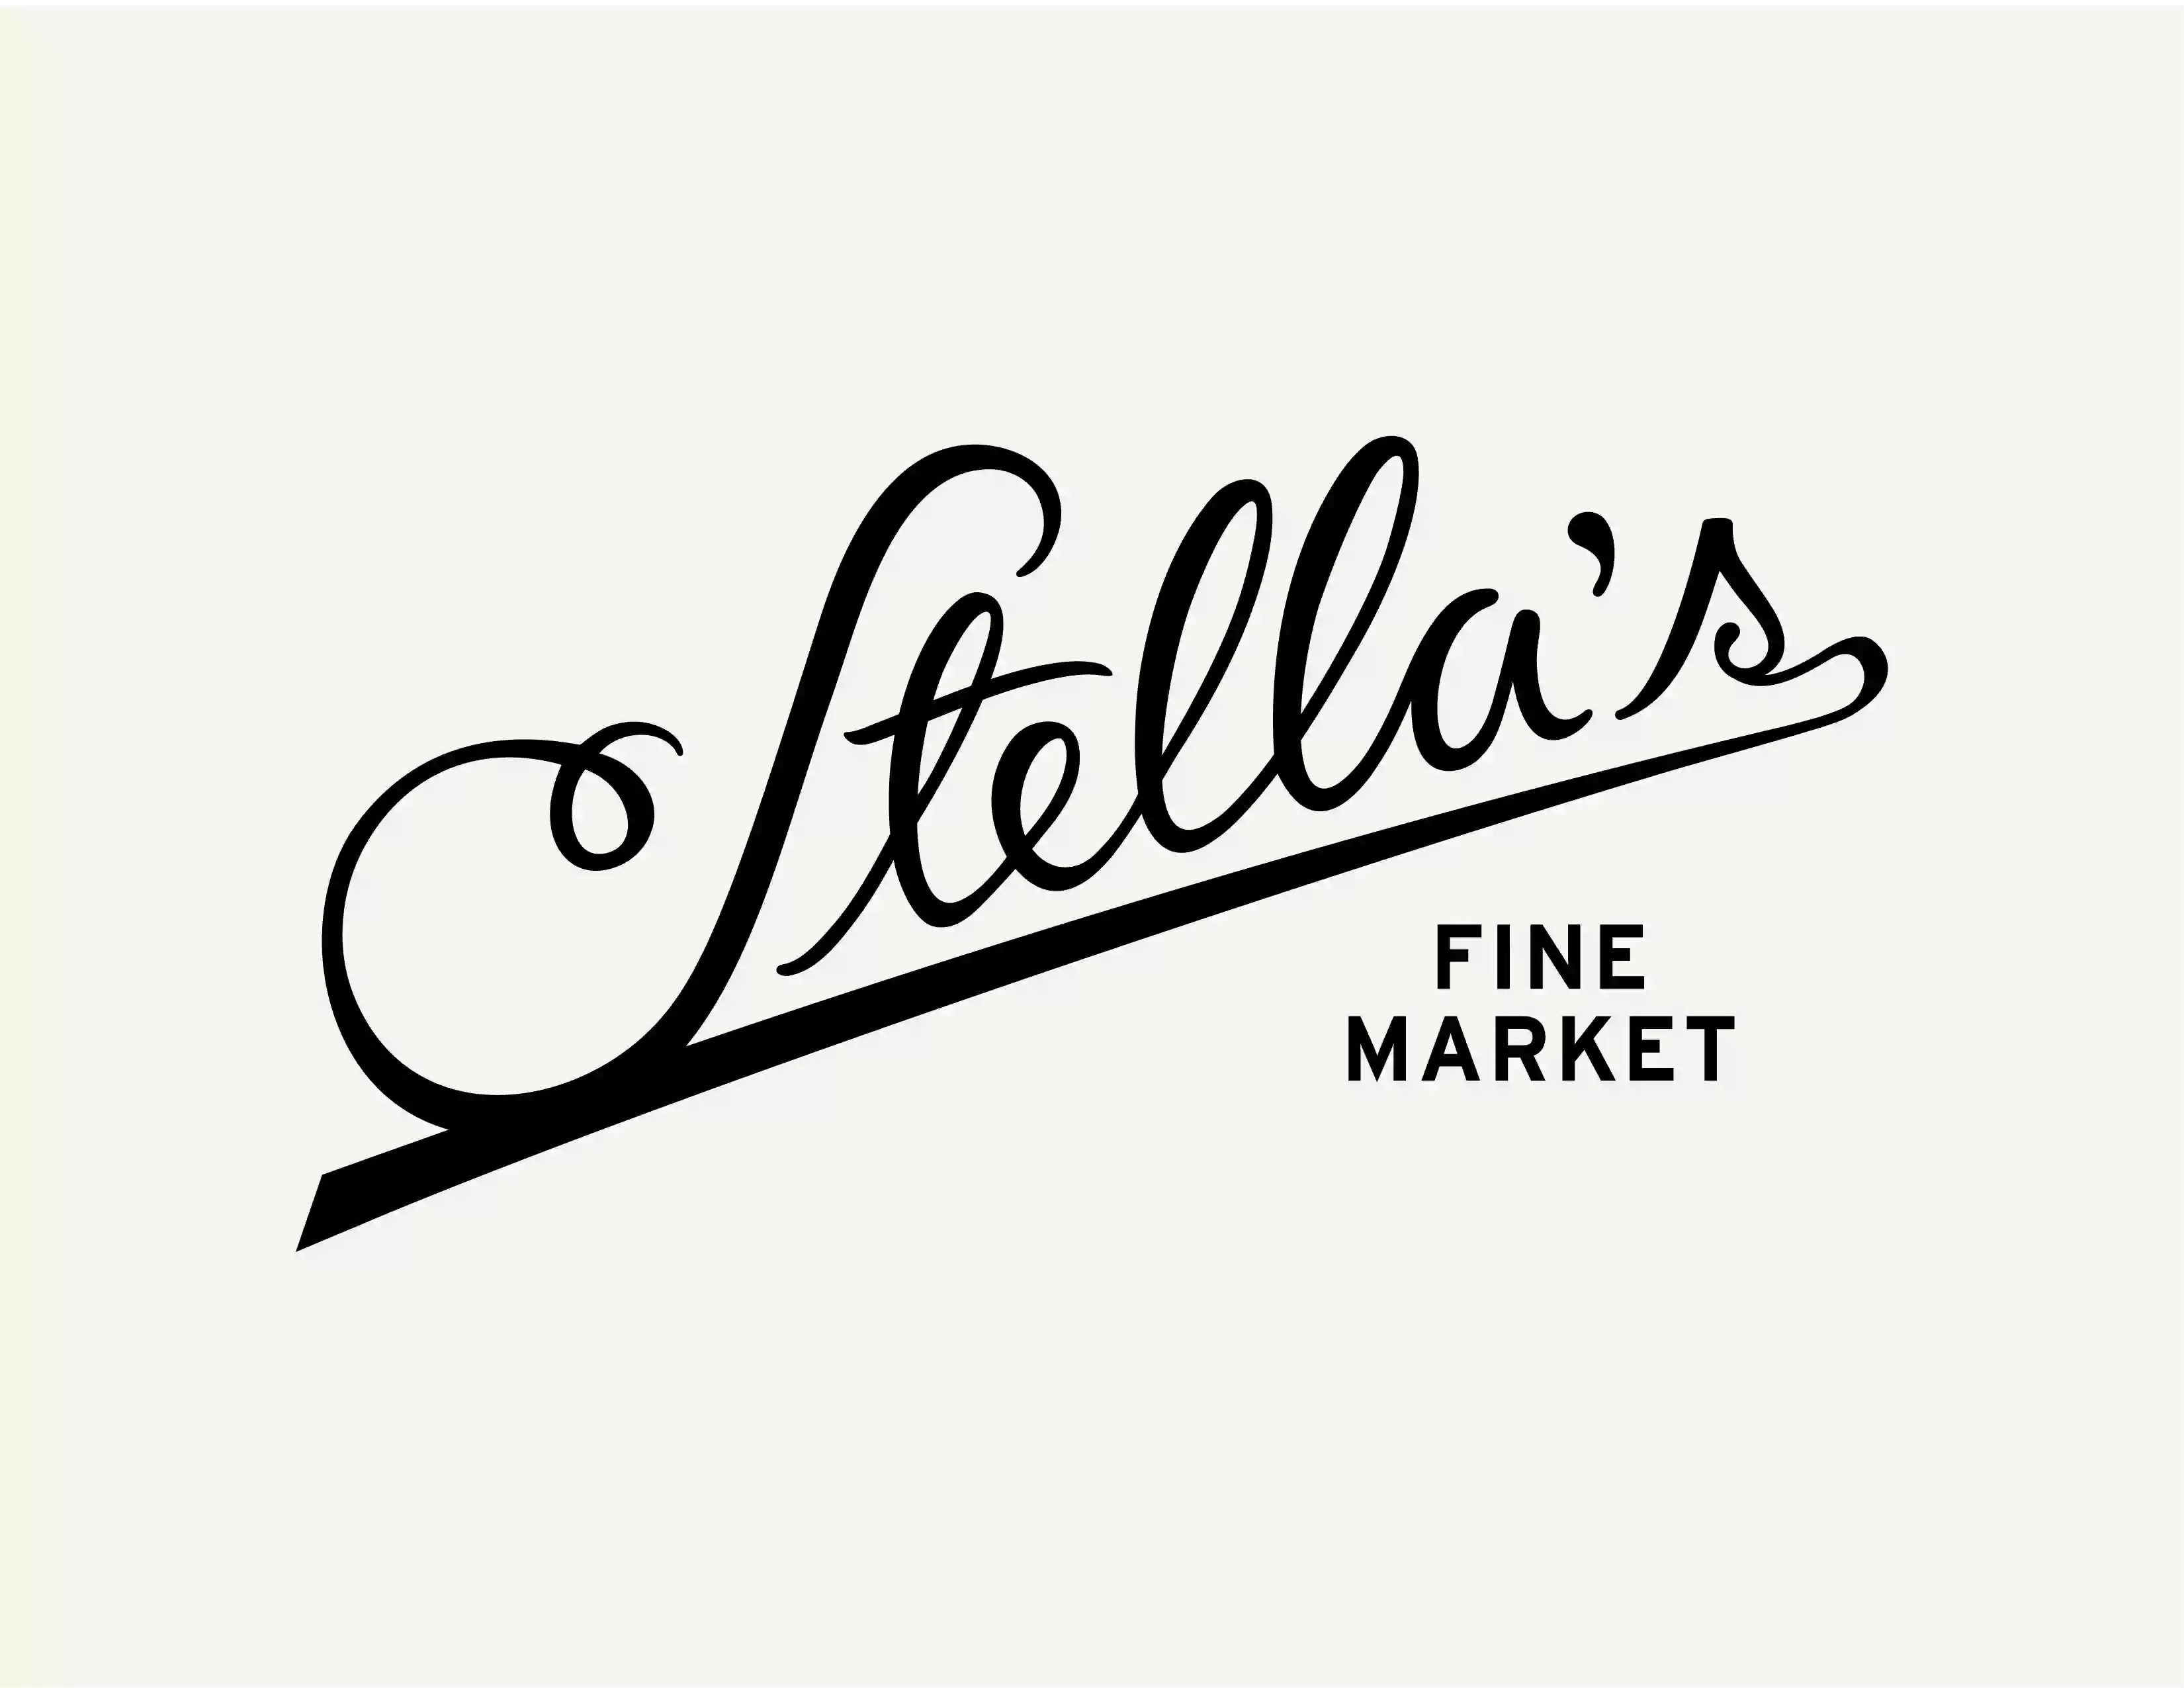 Stella's Fine Market